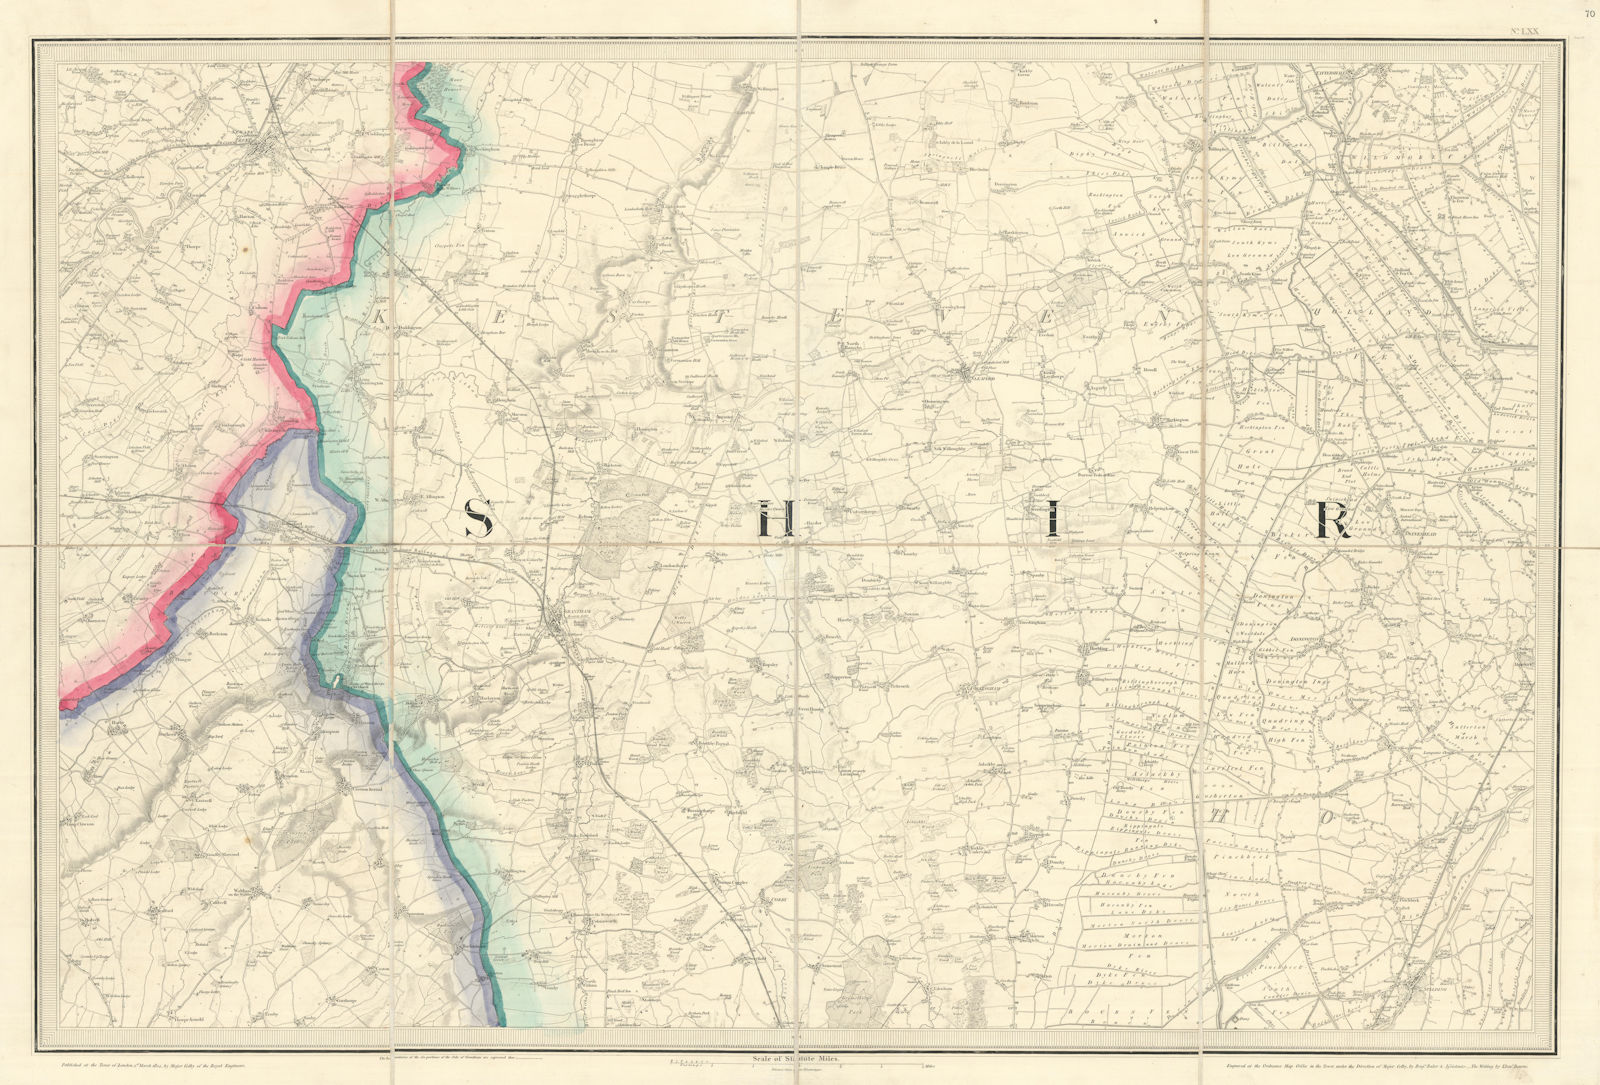 OS #70 South Lincolnshire Edge & Fens. Grantham Newark/Trent Kesteven 1824 map